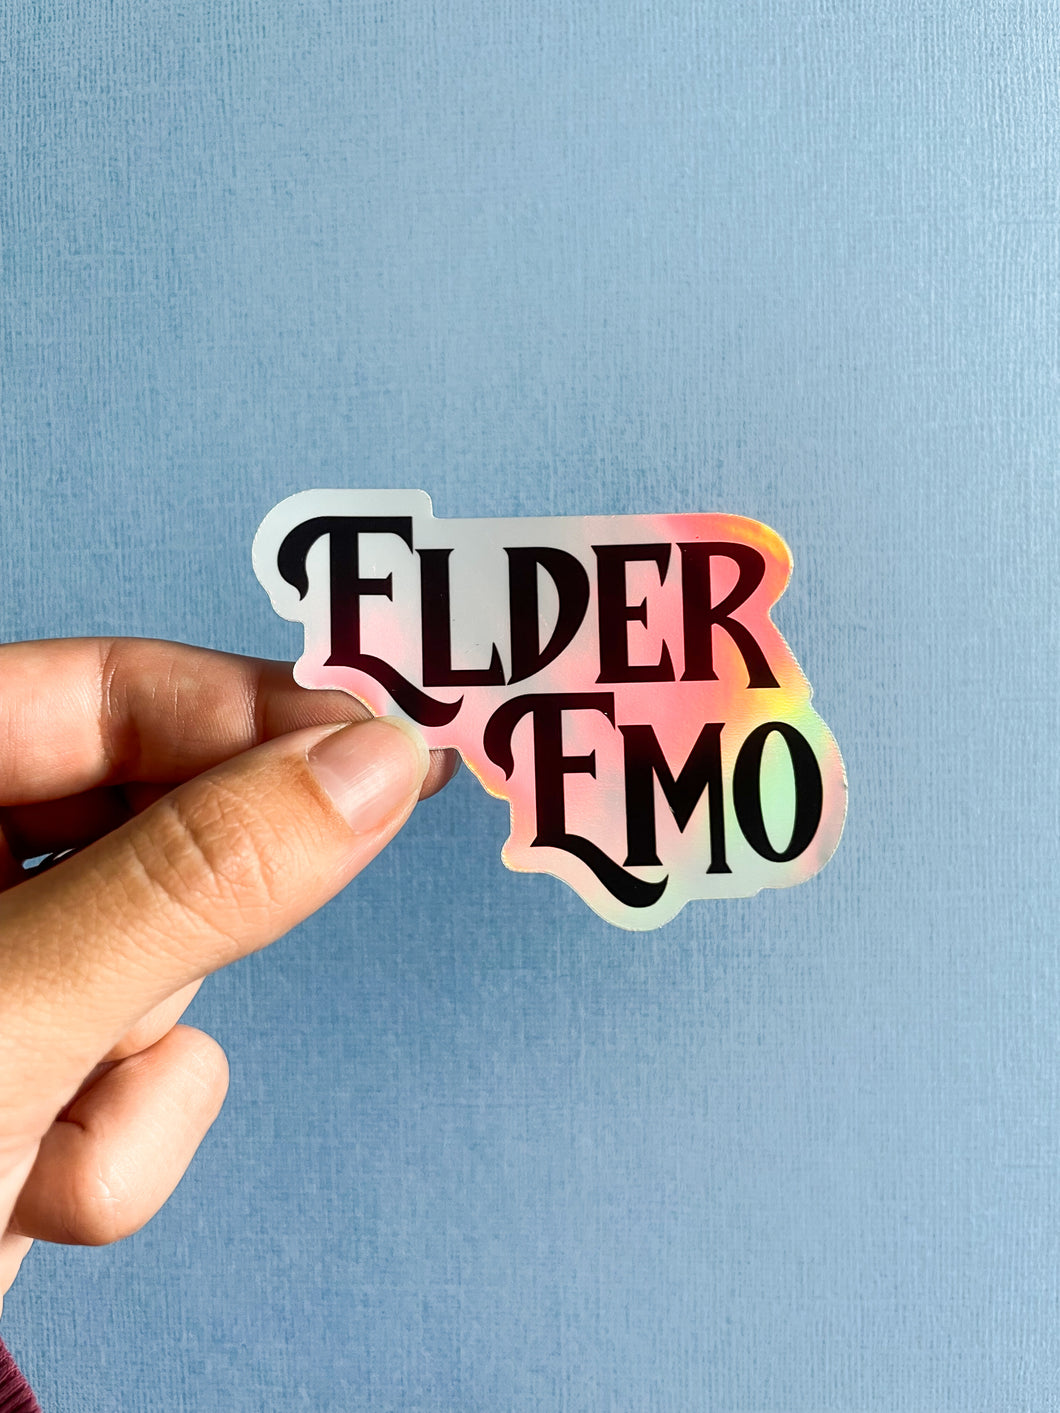 Elder Emo Holographic Sticker